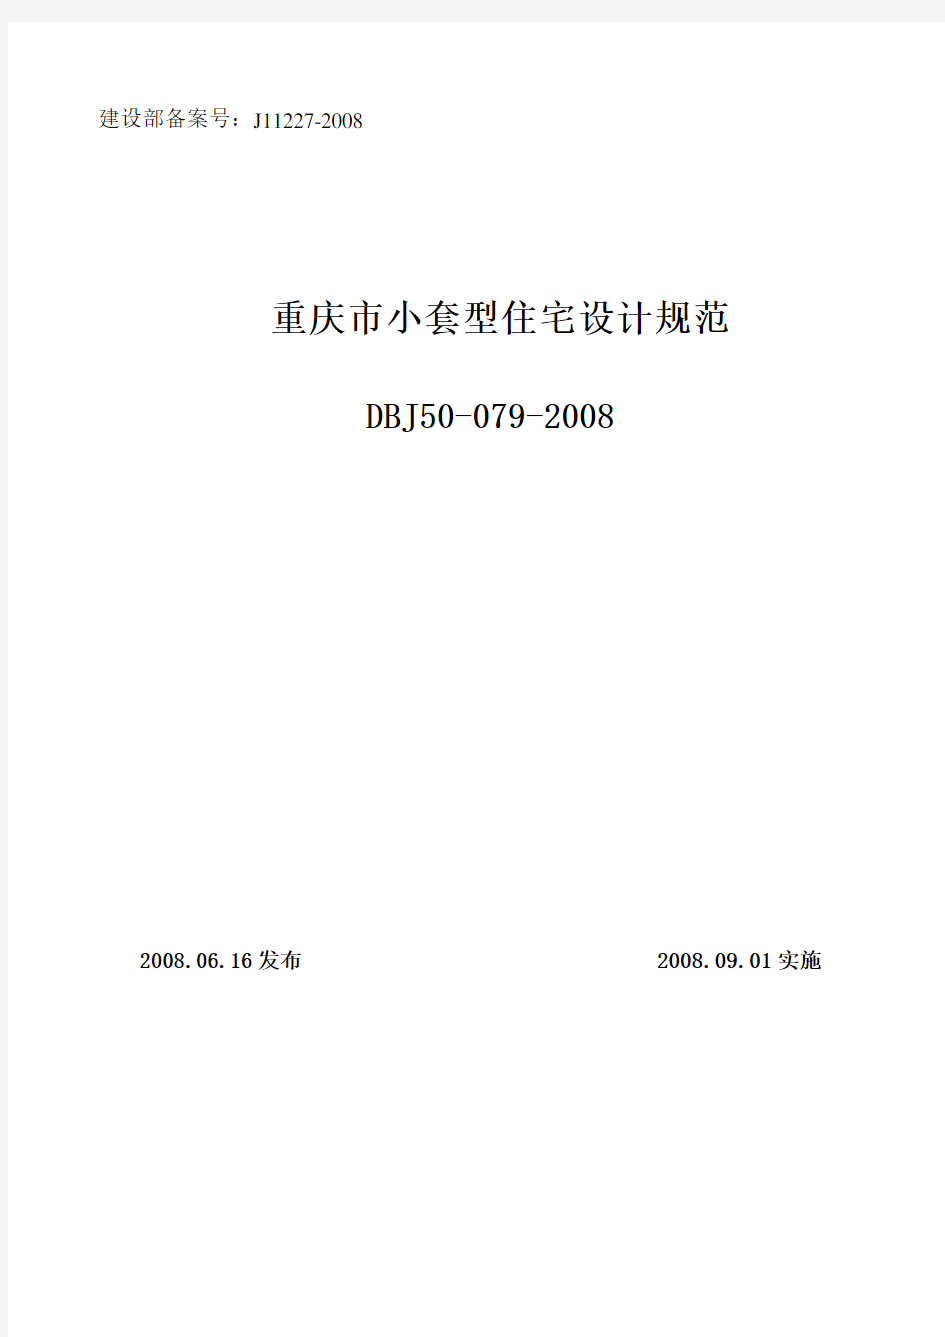 重庆市小套型住宅设计规范(DBJ50-079-2008)